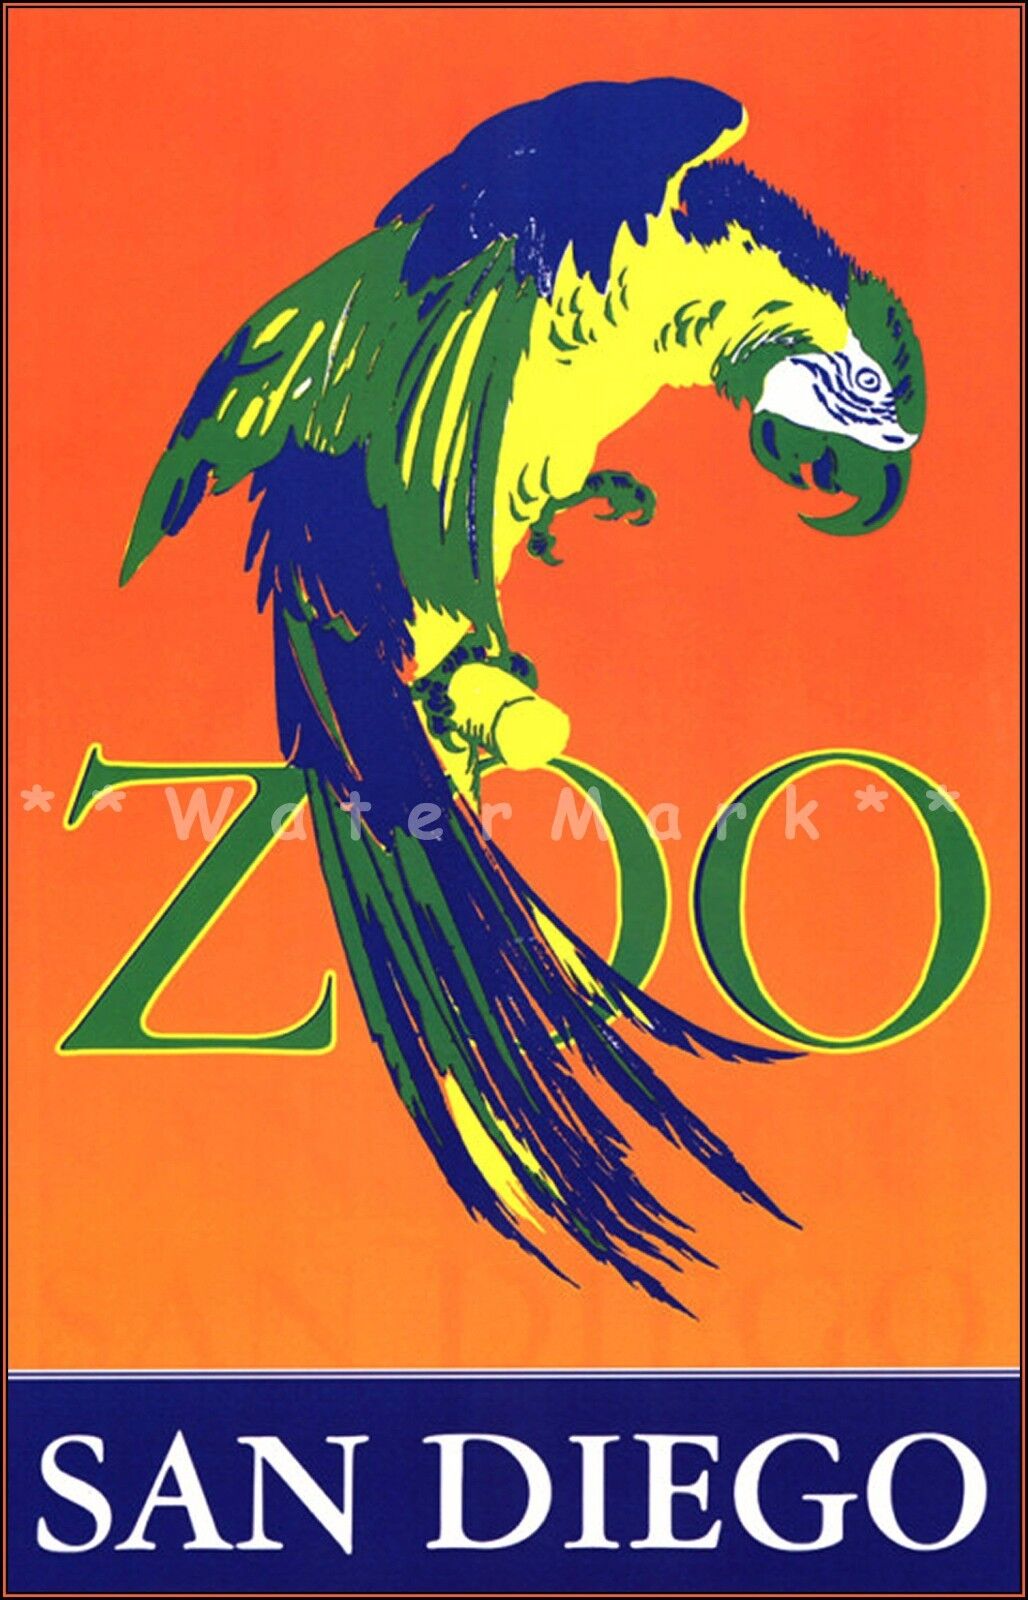 San Diego Zoo California 1960 Parrot Vintage Poster Print Art Retro Travel Art